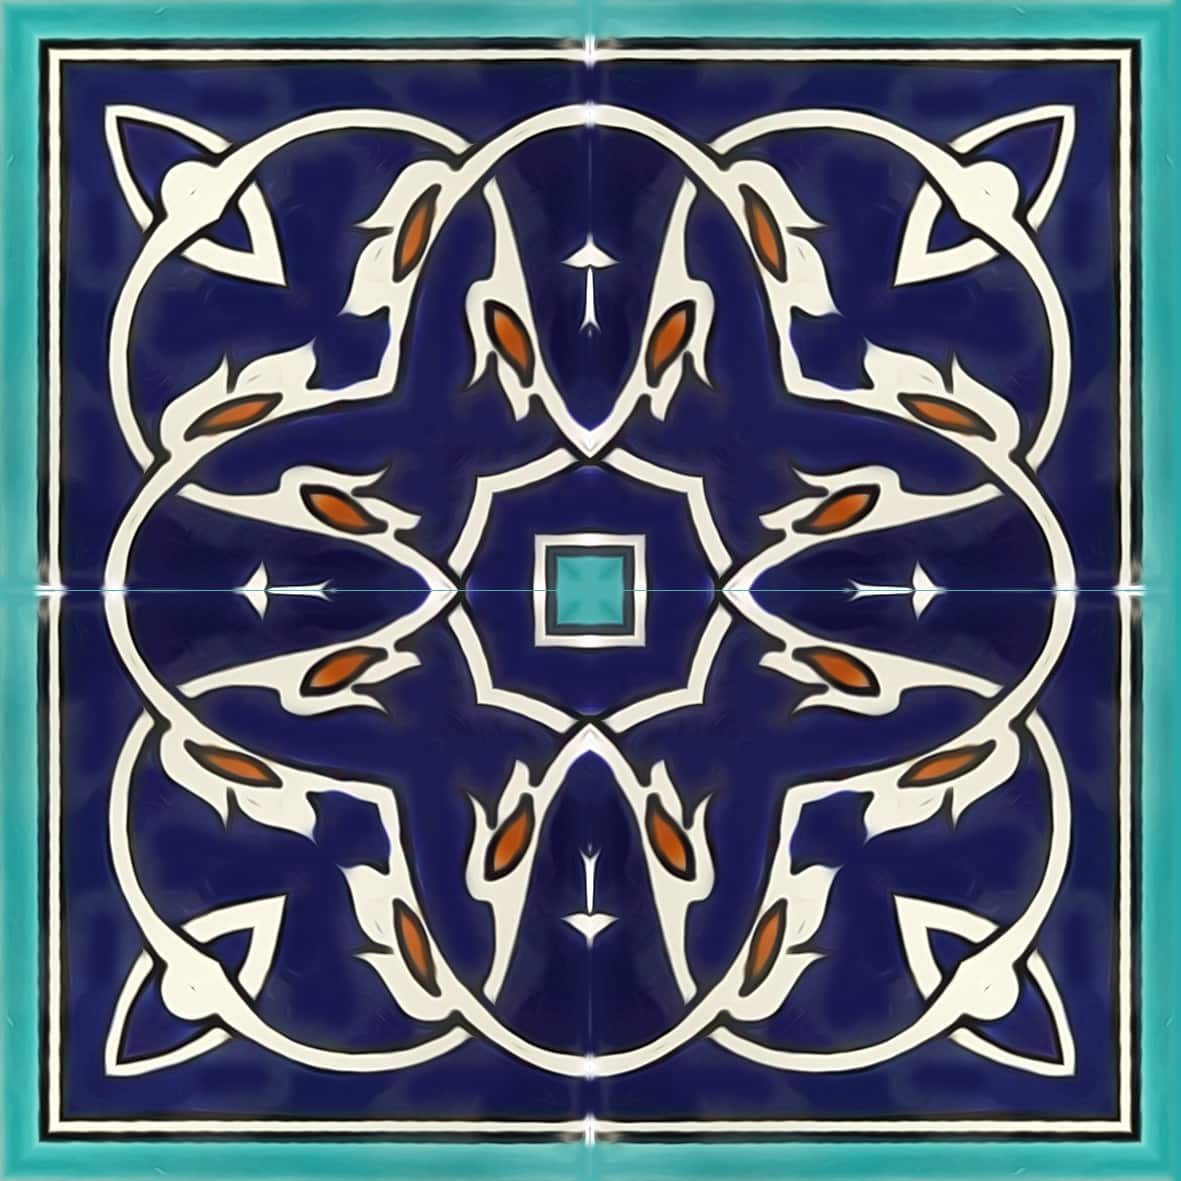 Chains D blue ceramic tile pattern